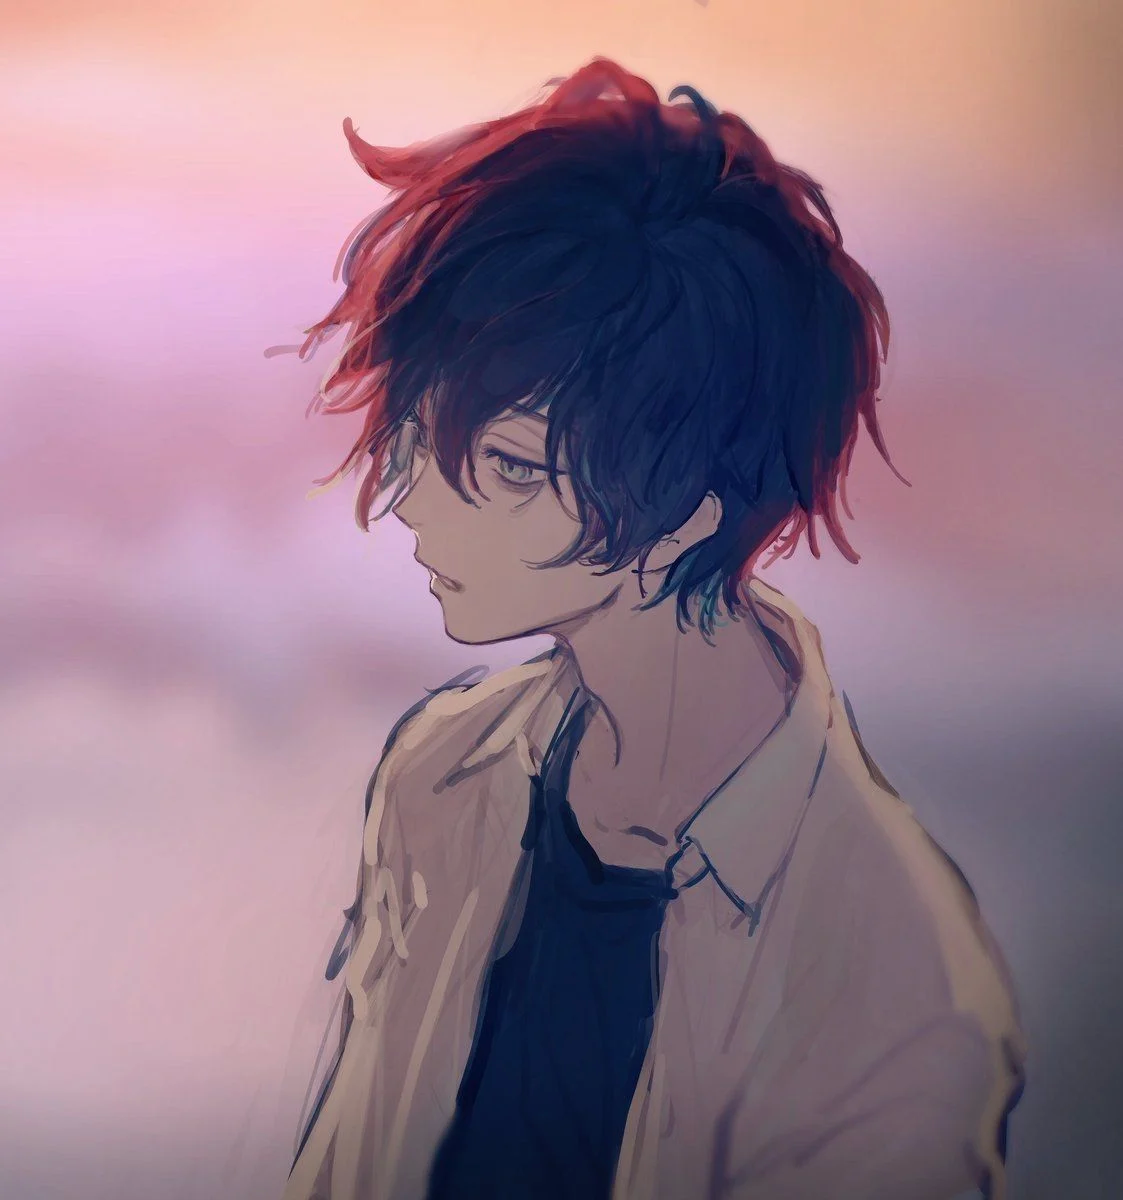 Hình ảnh anime nam ngầu, lạnh lùng buồn đẹp nhất